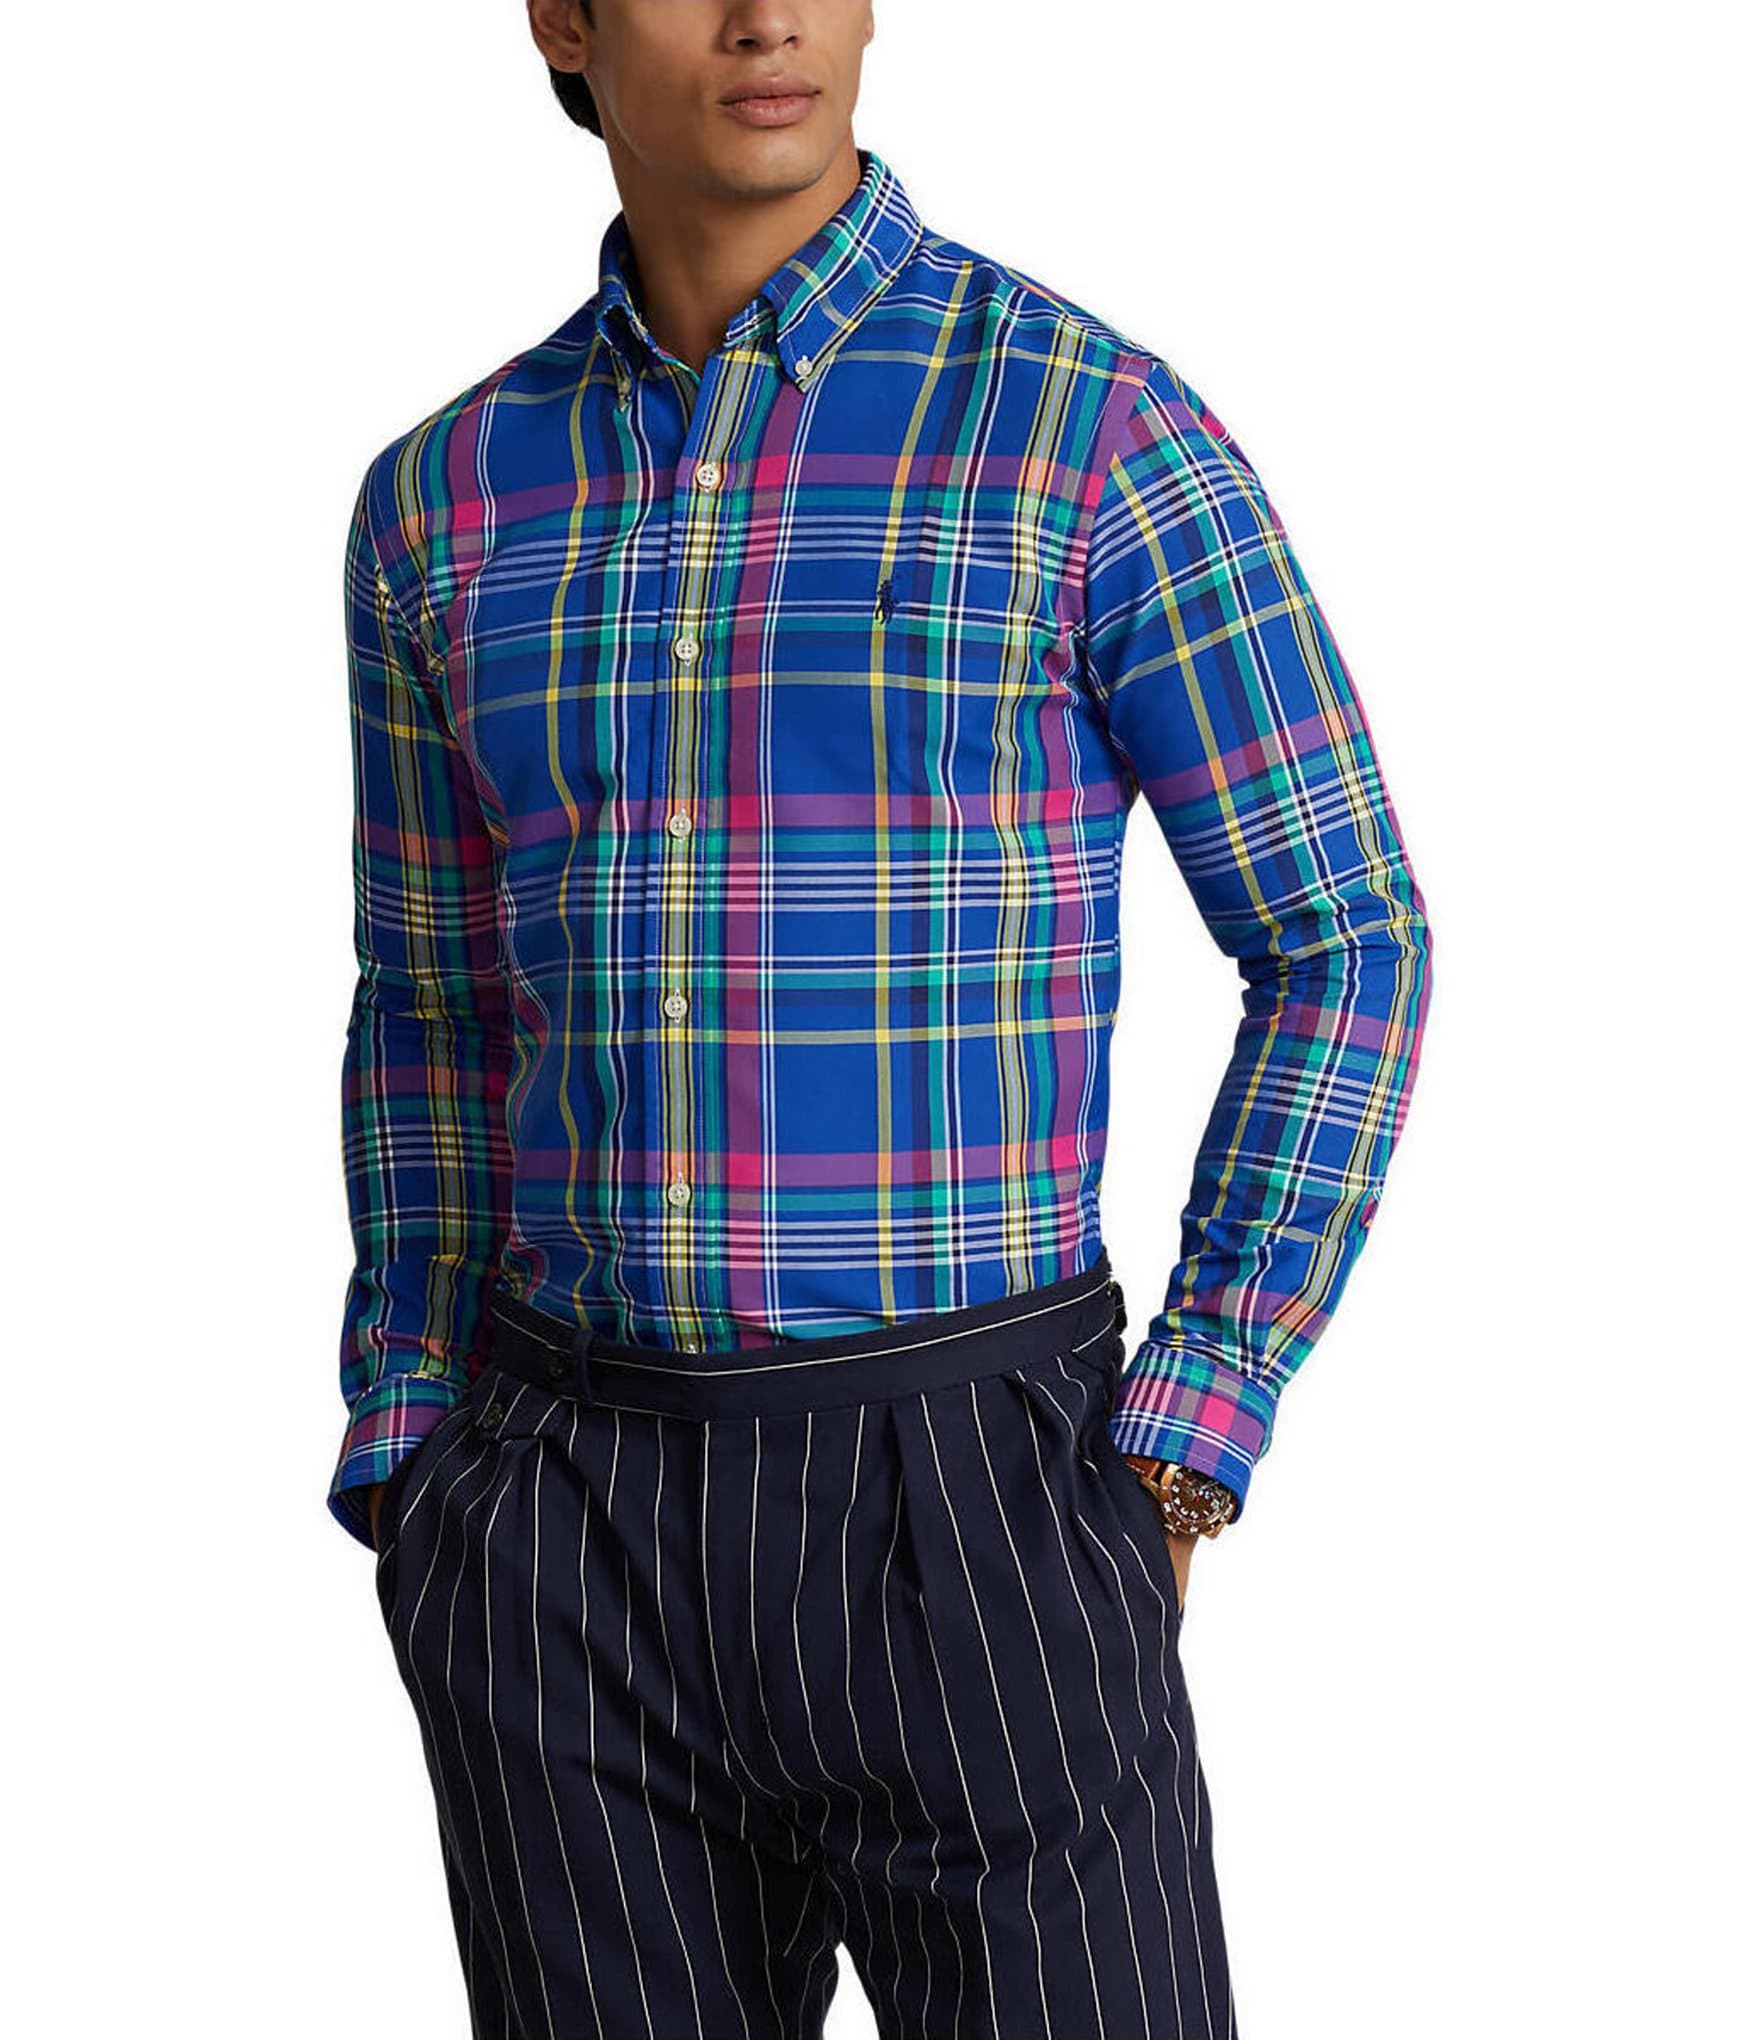 Polo Ralph Lauren Men's Classic Fit Plaid Performance Shirt, 2XL